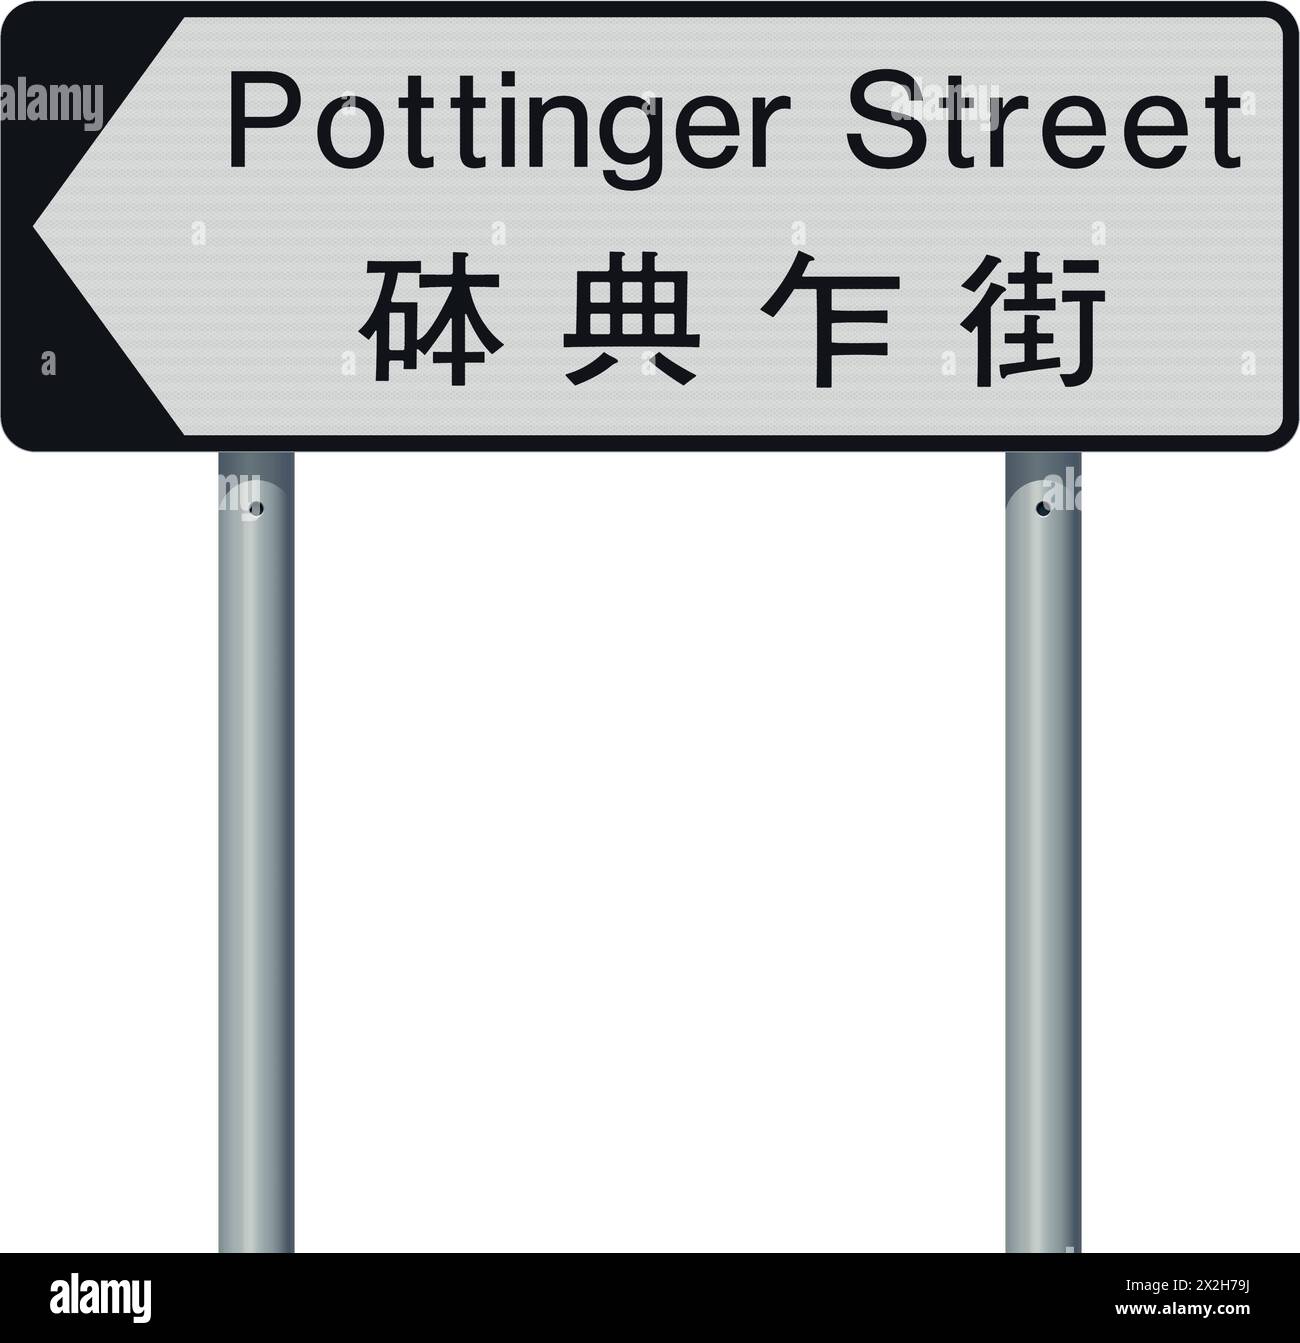 Ilustración vectorial de Pottinger Street (Hong Kong) señal de carretera blanca y negra con traducción china Ilustración del Vector